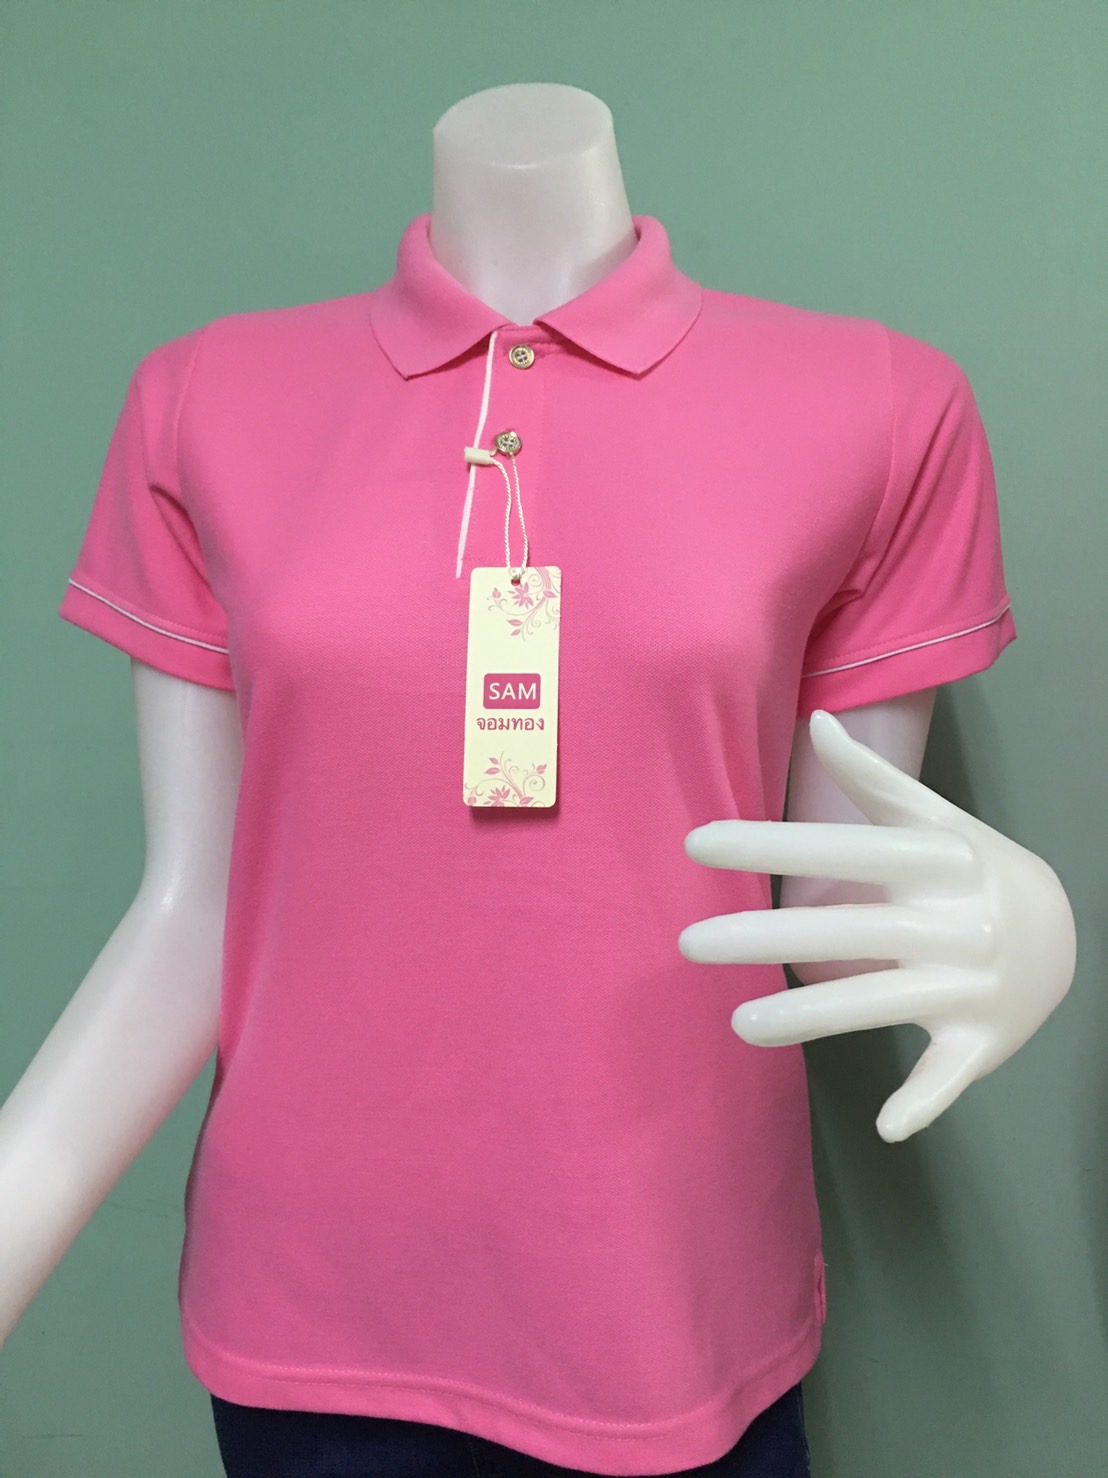 C H shop เสื้อโปโลสีชมพู ทรงผู้ชายทรงผู้หญิง ชุดทำงาน สีชมพูกลาง